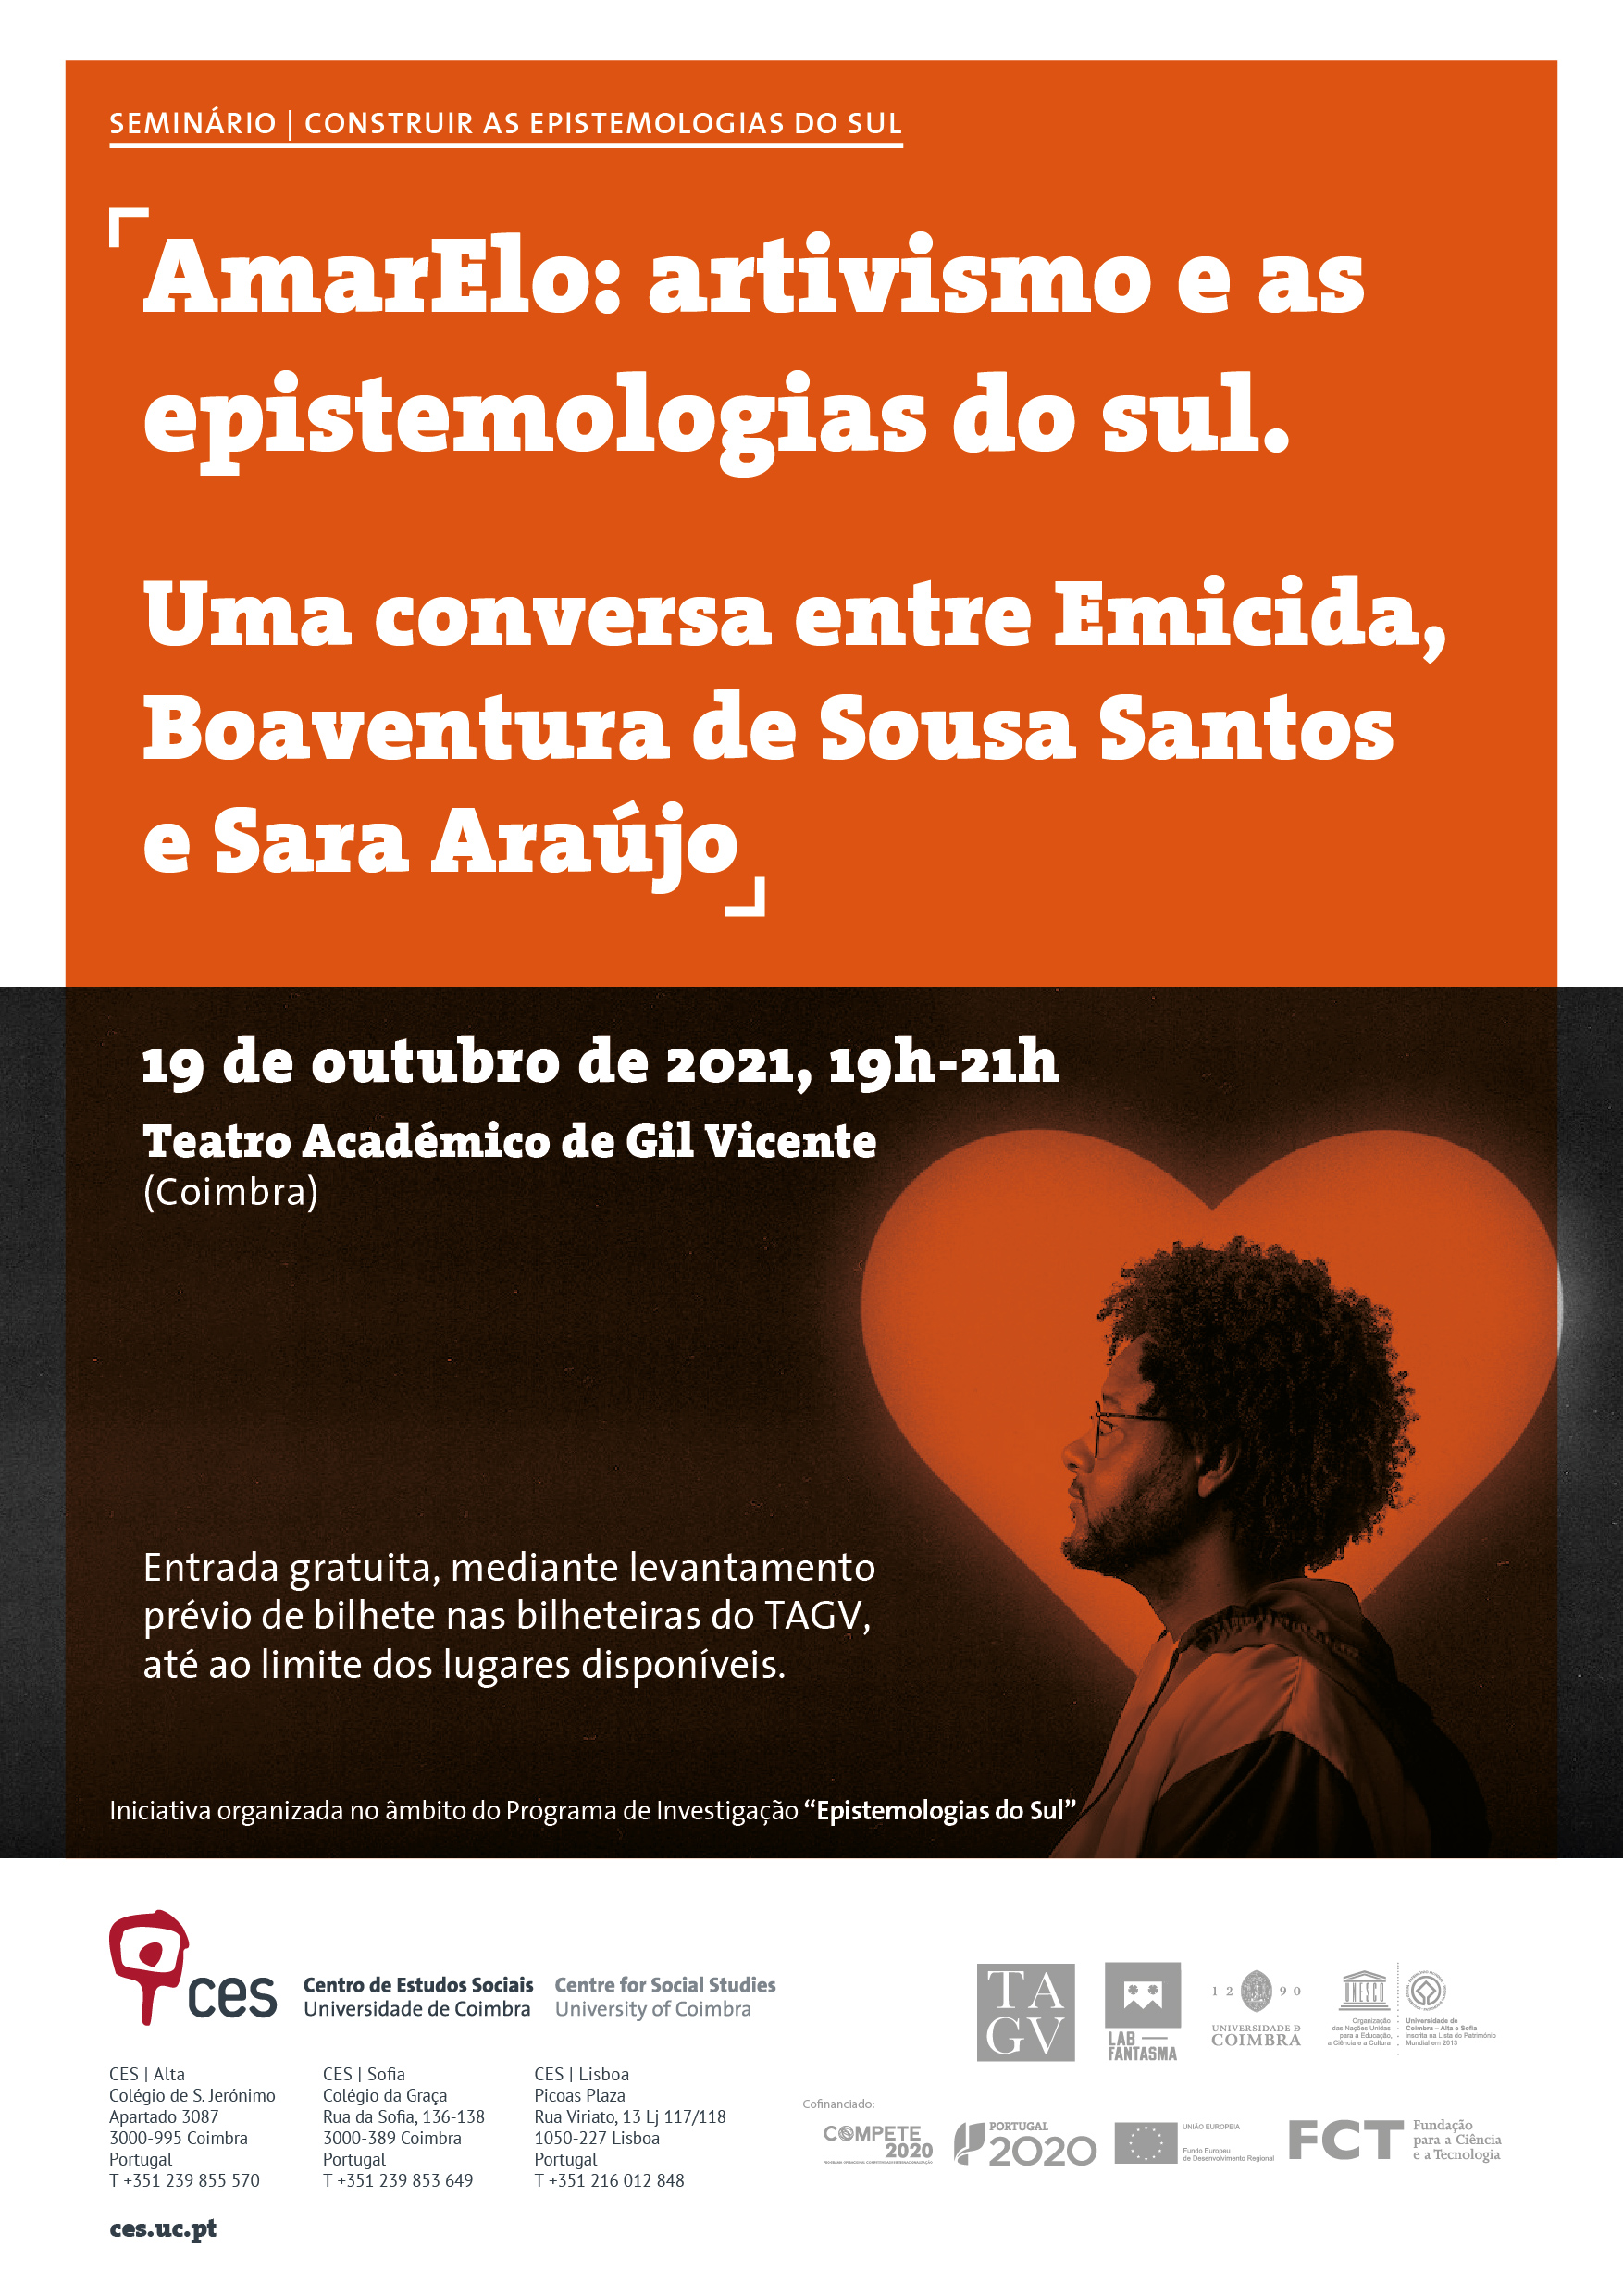 AmarElo: artivism and the epistemologies of the south. A conversation between Emicida, Boaventura de Sousa Santos and Sara Araújo<span id="edit_33584"><script>$(function() { $('#edit_33584').load( "/myces/user/editobj.php?tipo=evento&id=33584" ); });</script></span>